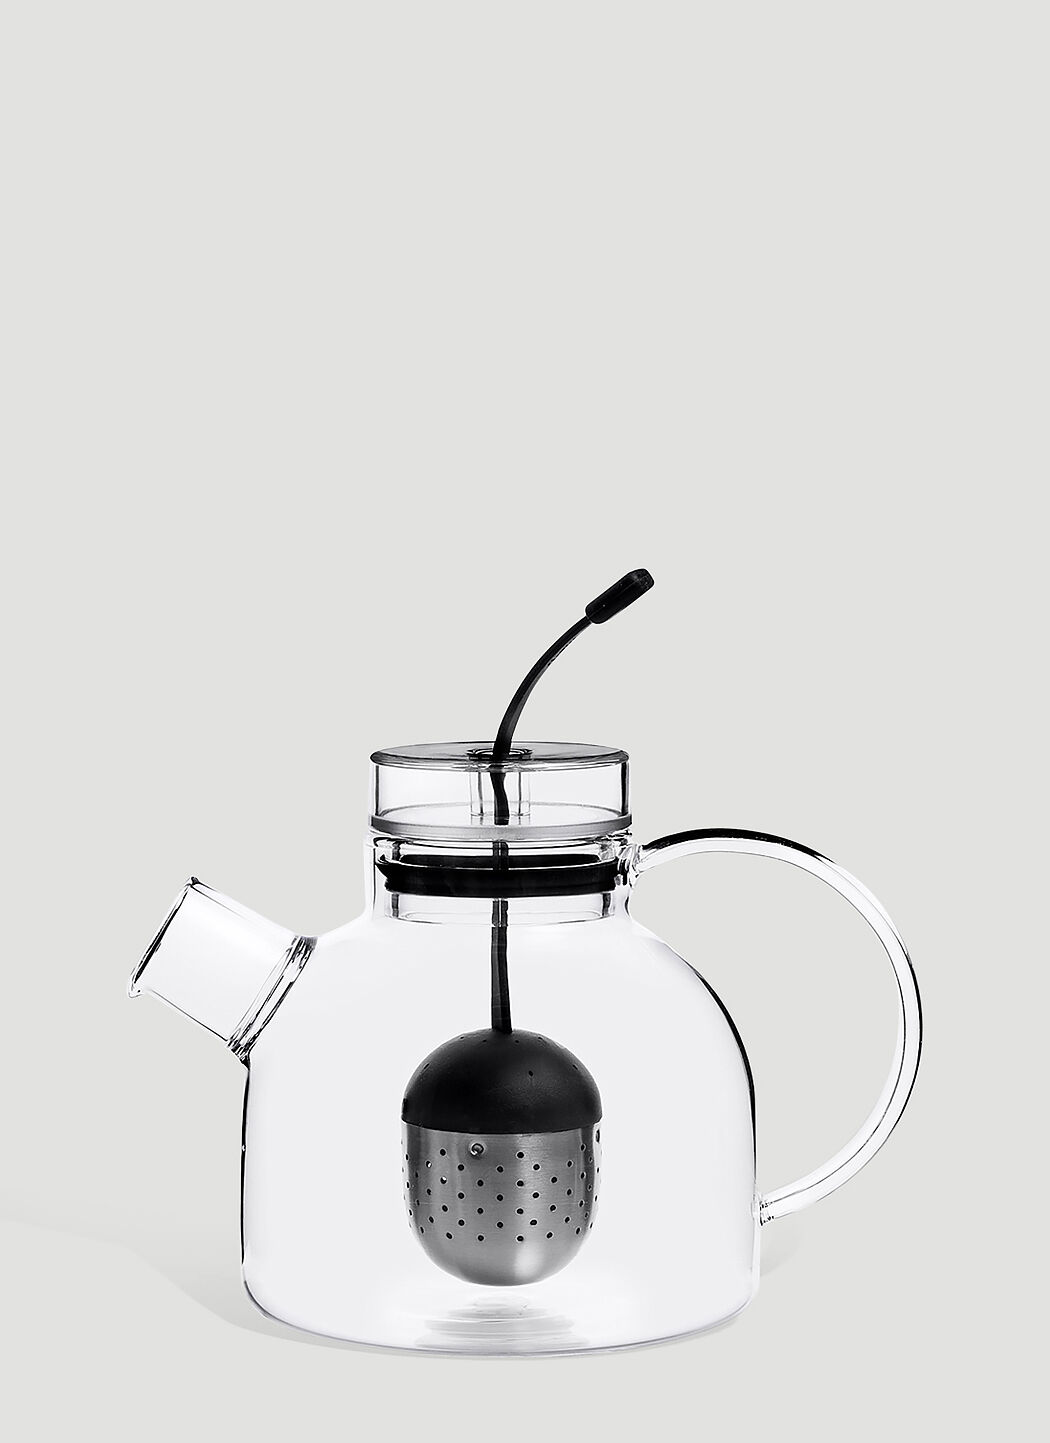 Audo Copenhagen Small Kettle Teapot White wps0638328